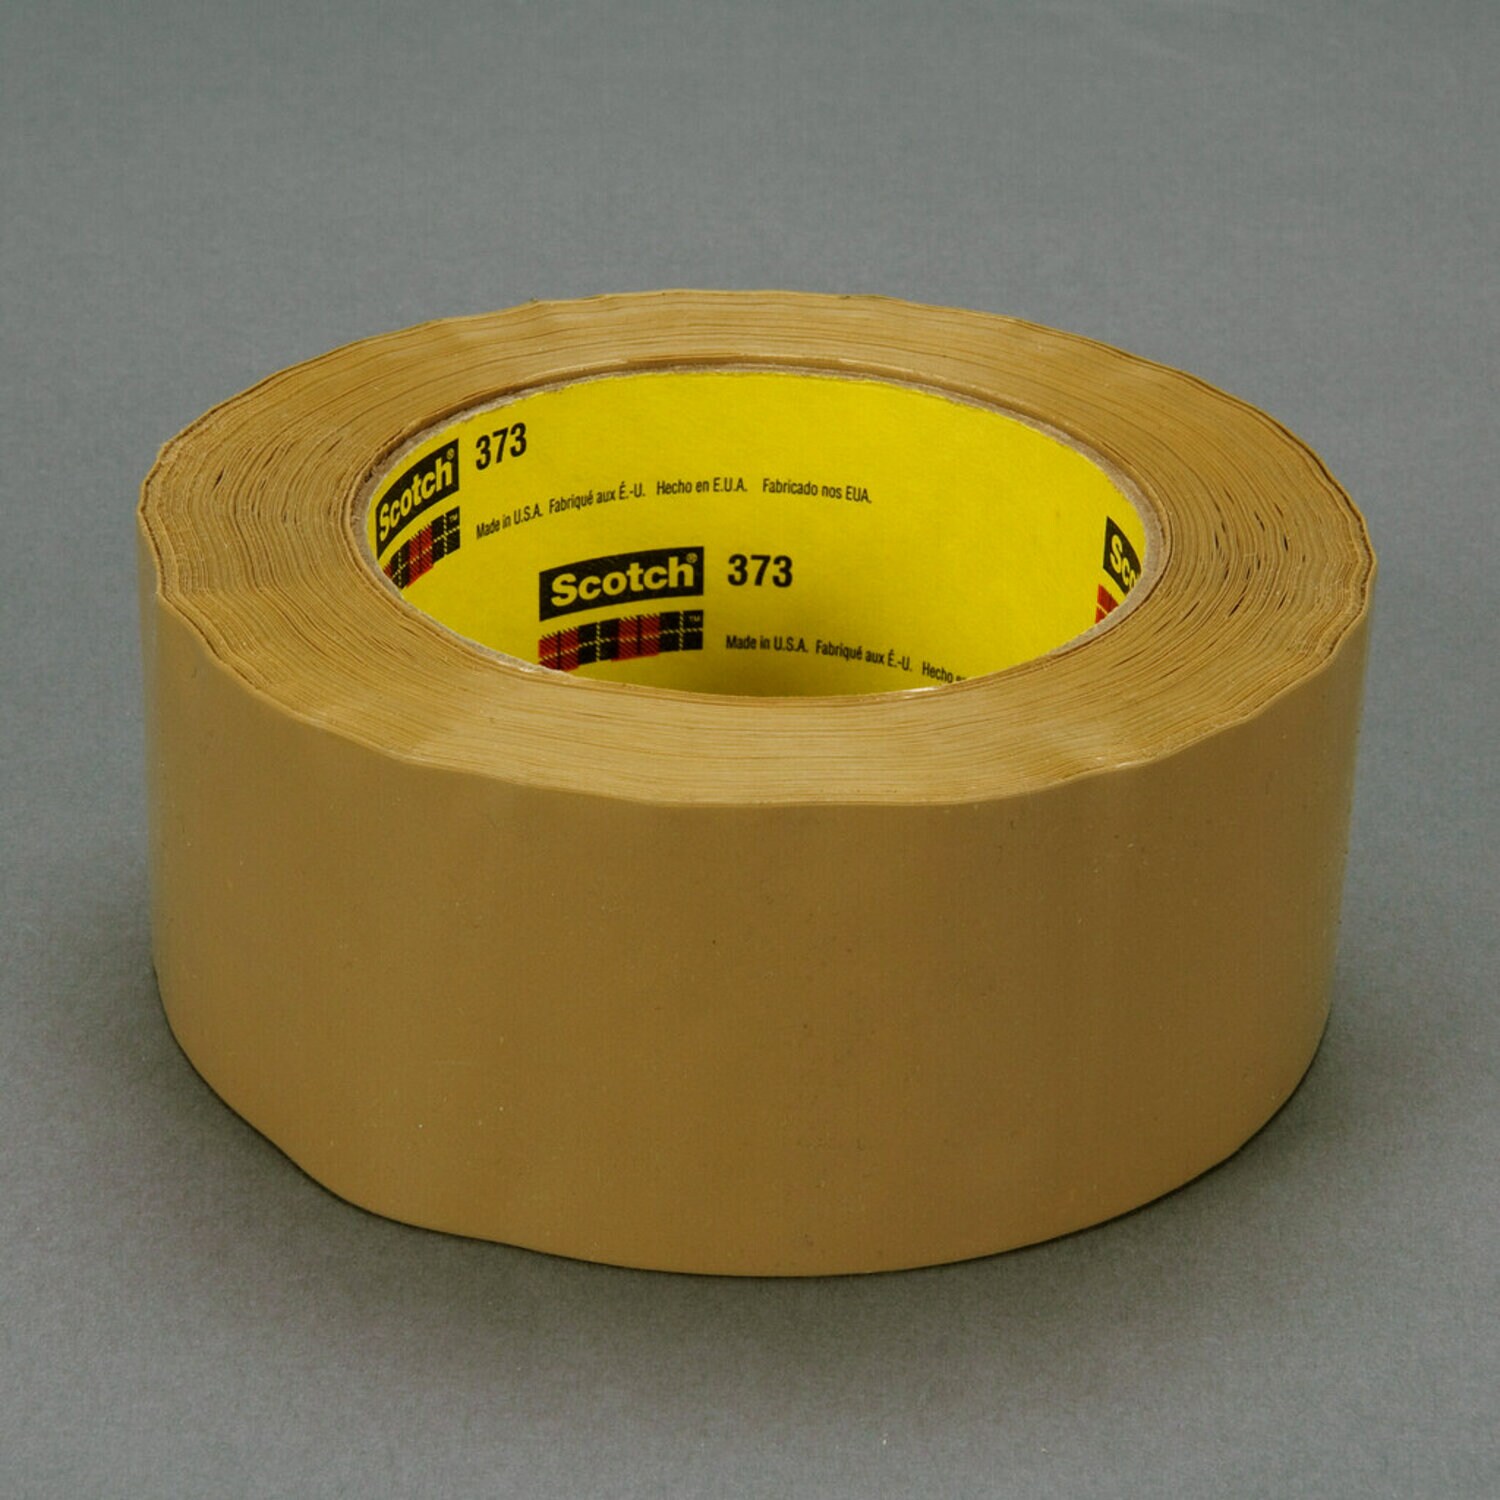 7010295176 - Scotch Box Sealing Tape 373, Tan, 72 mm x 100 m, 24/Case